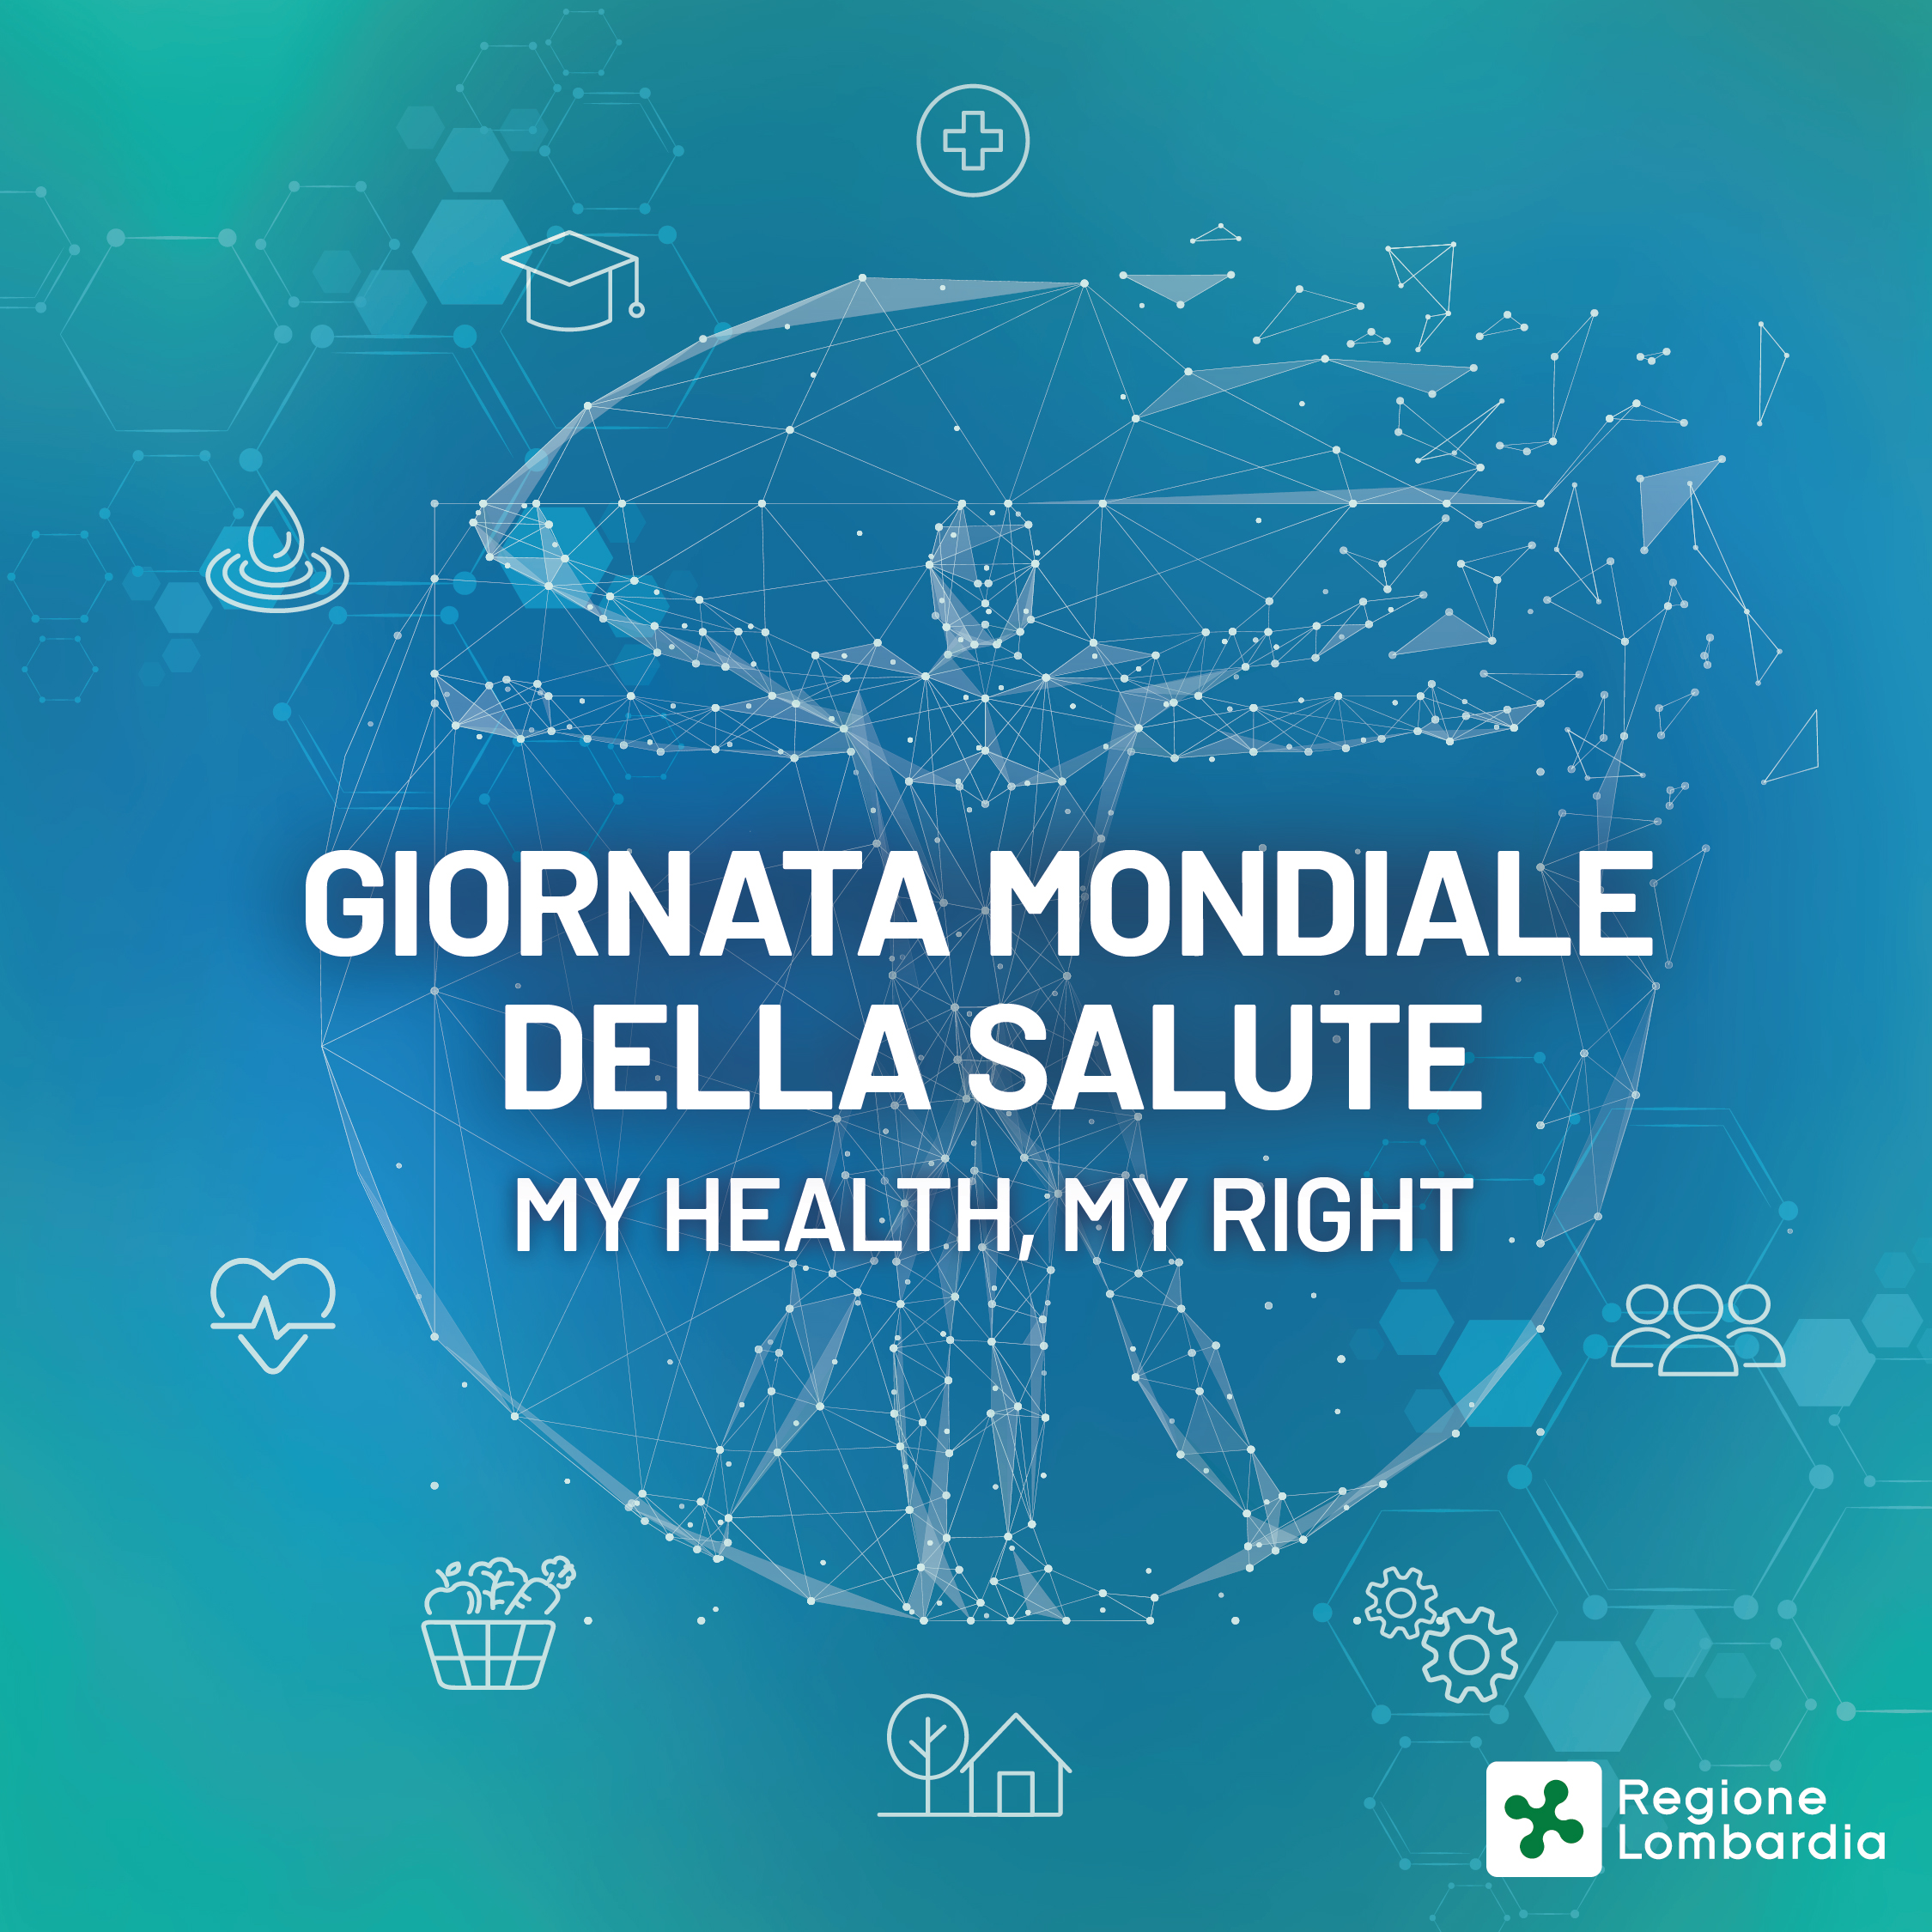  GIORNATA MONDIALE DELLA SALUTE - MY HEALTH, MY RIGHT - SCREENING E VACCINAZIONI GRATUITE 